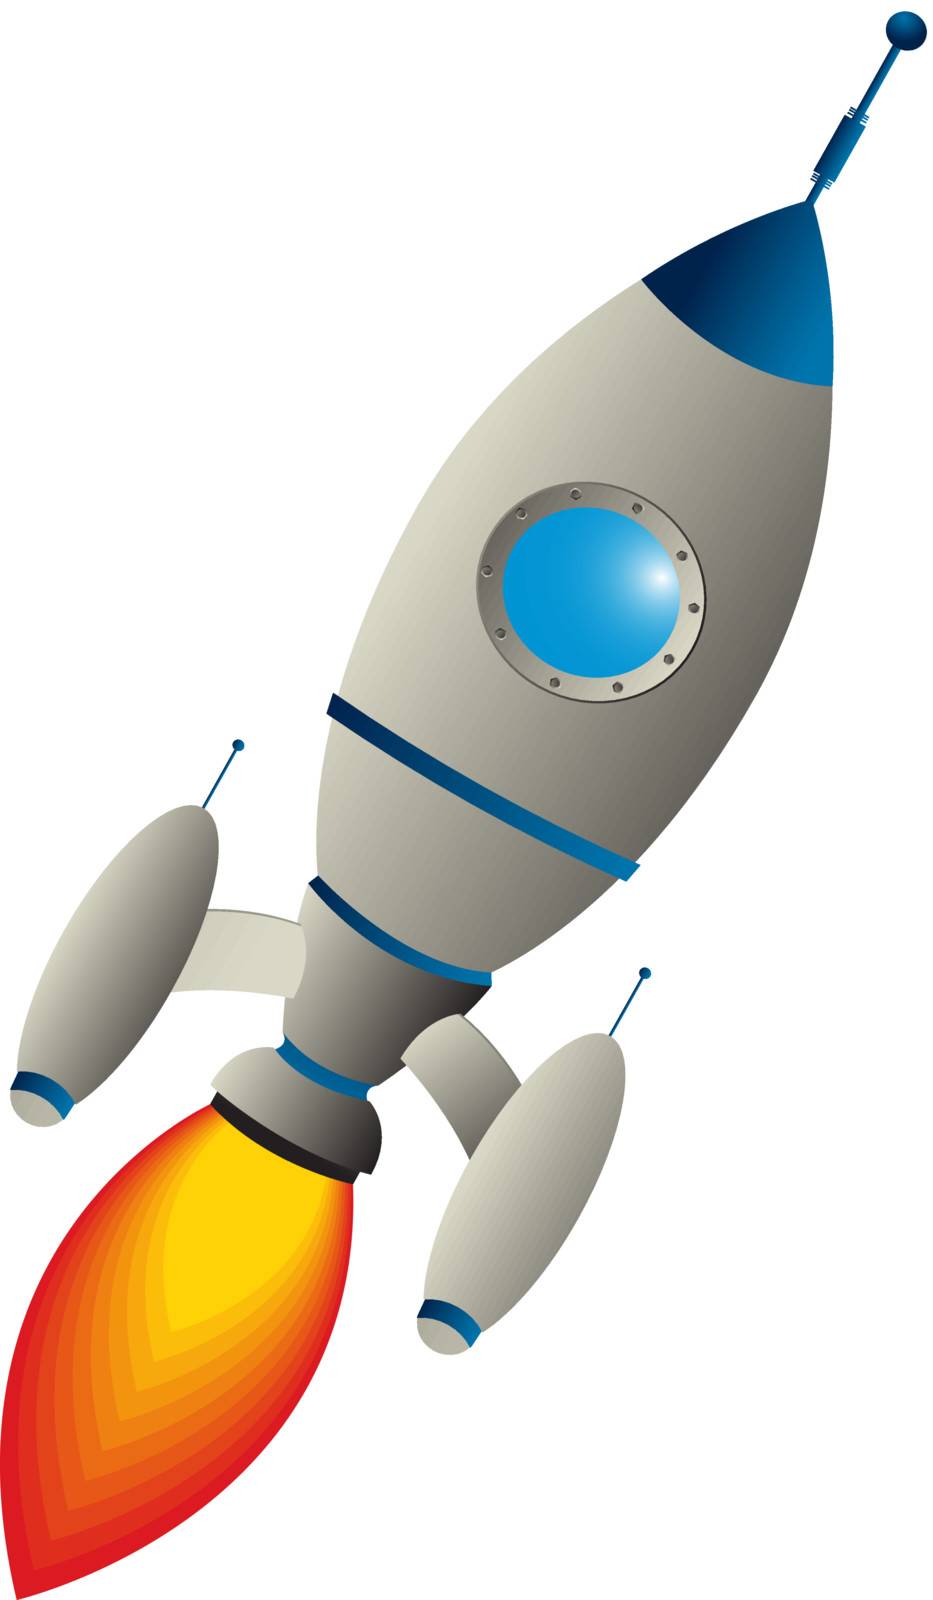 Clip art rocket by Lirch